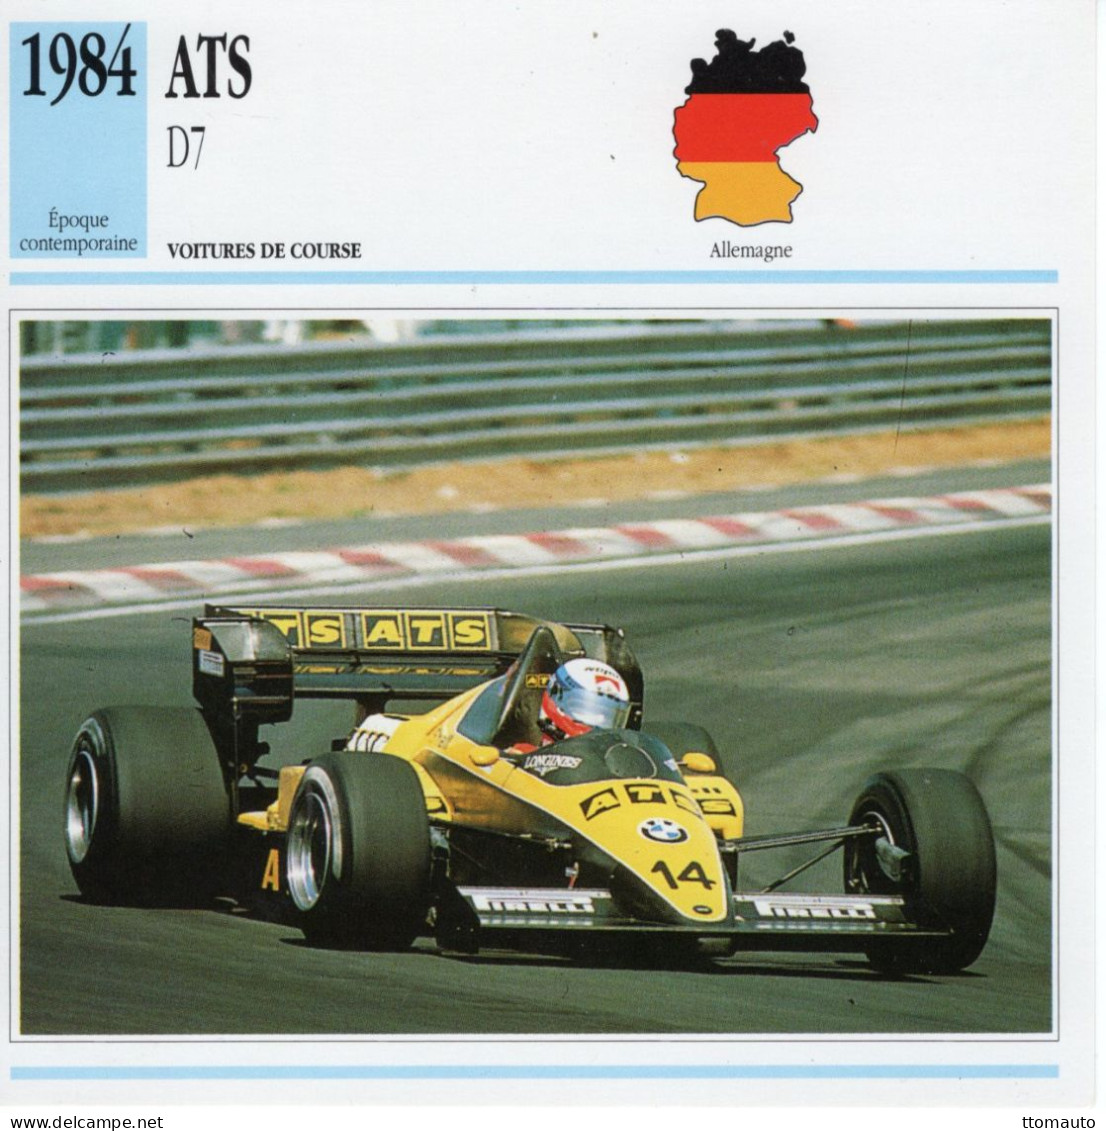 Fiche  -  Voiture De Course F1  -  ATS D7/01  (1984)  - Pilote: Manfred Winkelhock -  Carte De Collection - Autos